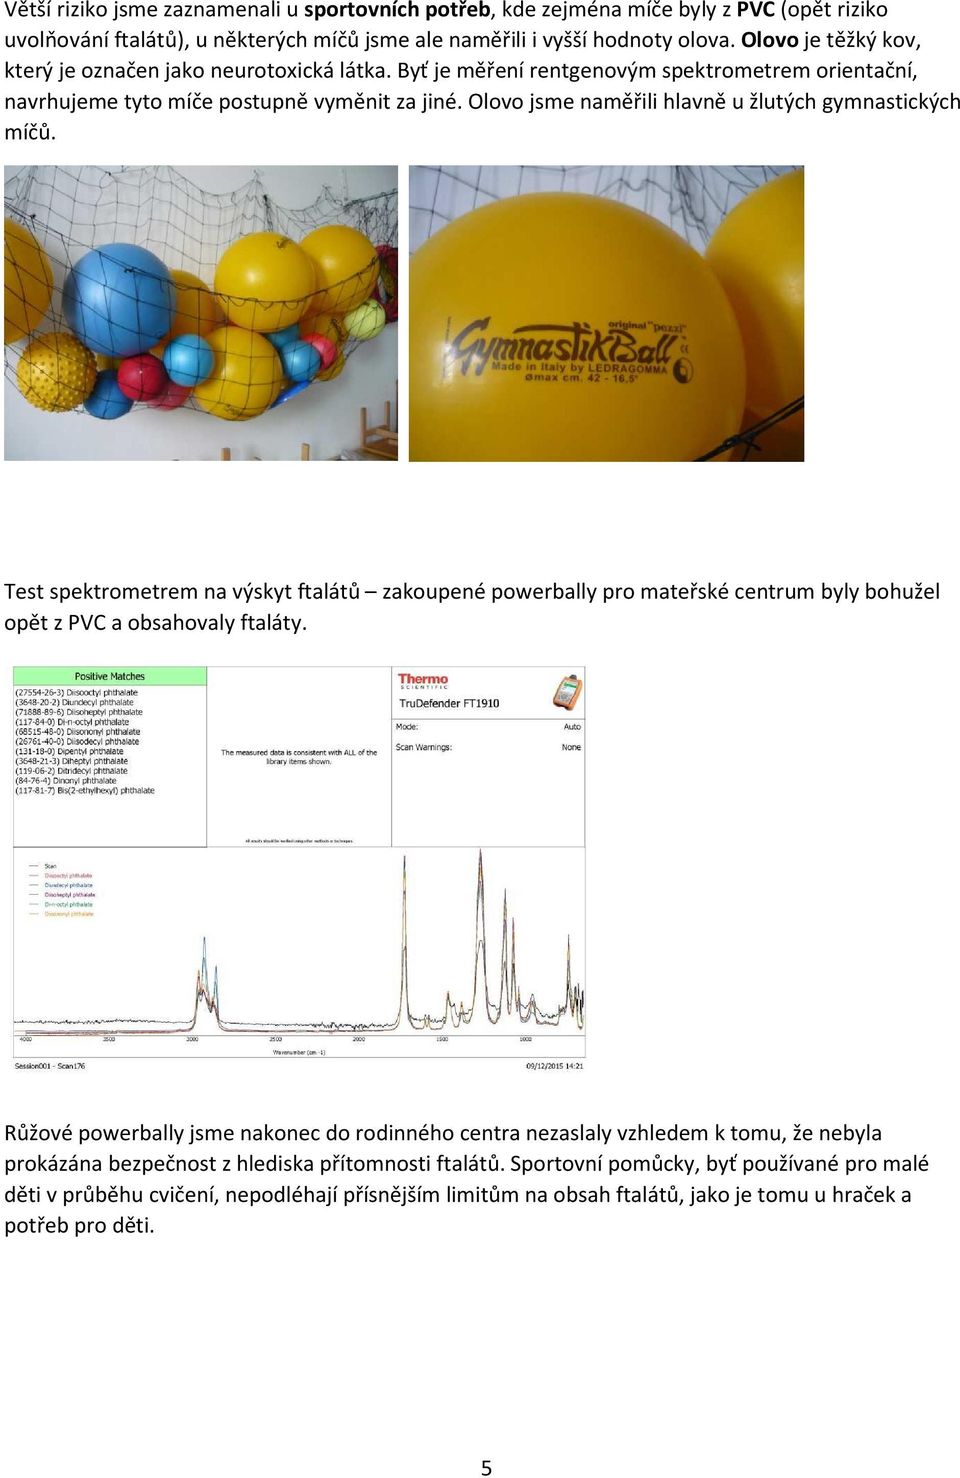 Olovo jsme naměřili hlavně u žlutých gymnastických míčů. Test spektrometrem na výskyt ftalátů zakoupené powerbally pro mateřské centrum byly bohužel opět z PVC a obsahovaly ftaláty.